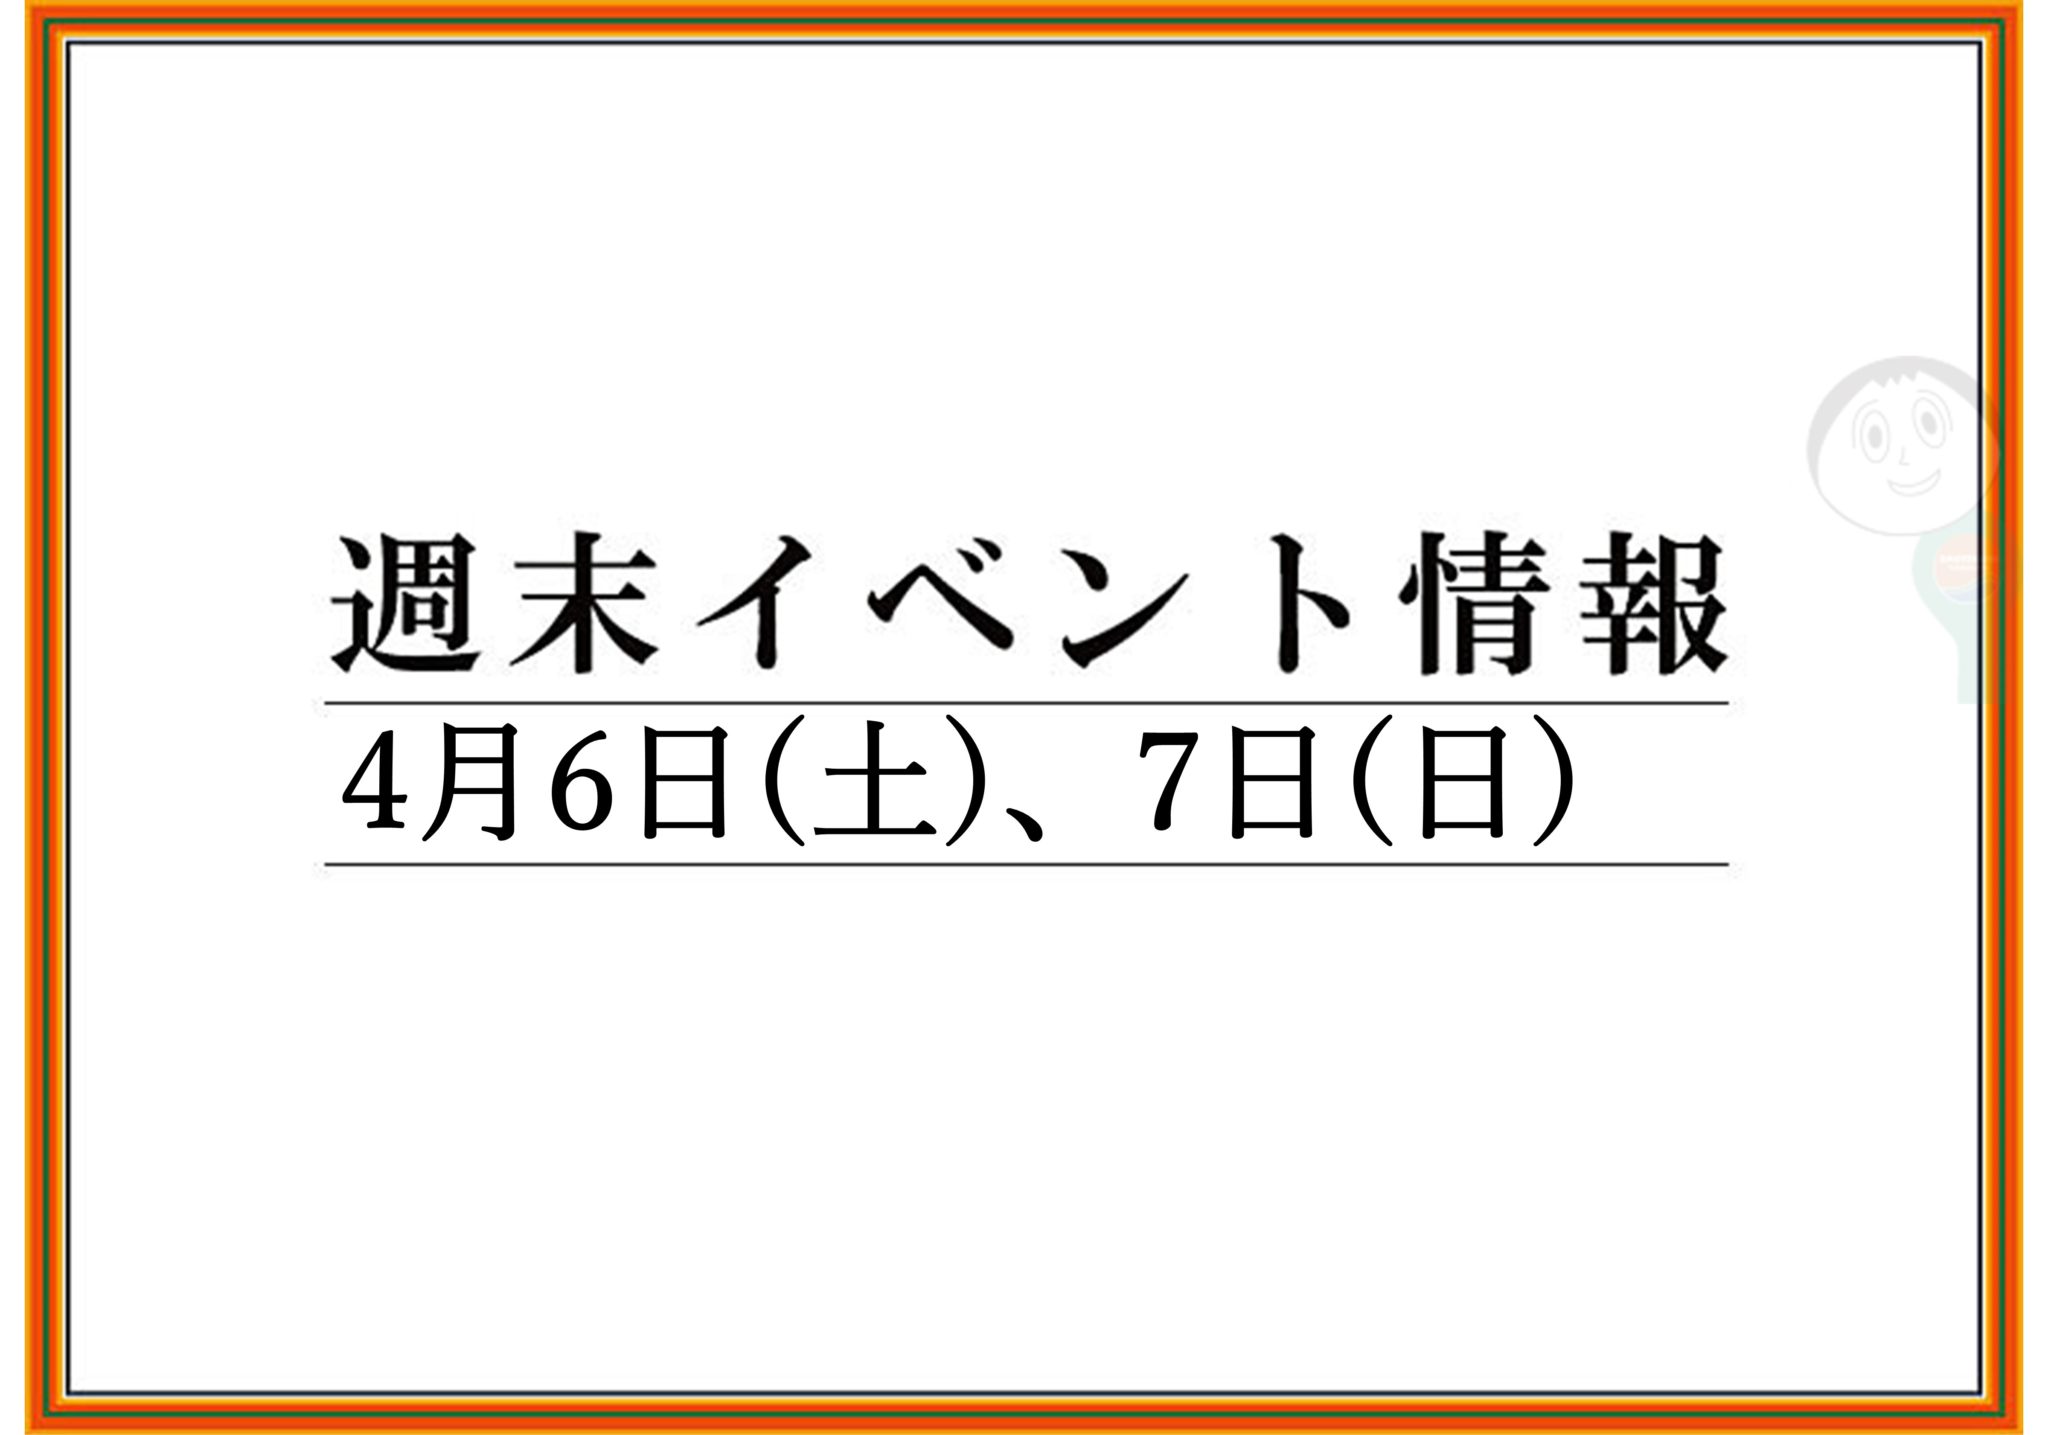 【まとめ】2019年 山形/上山/天童の週末イベント情報　4月6日(土),7日(日)